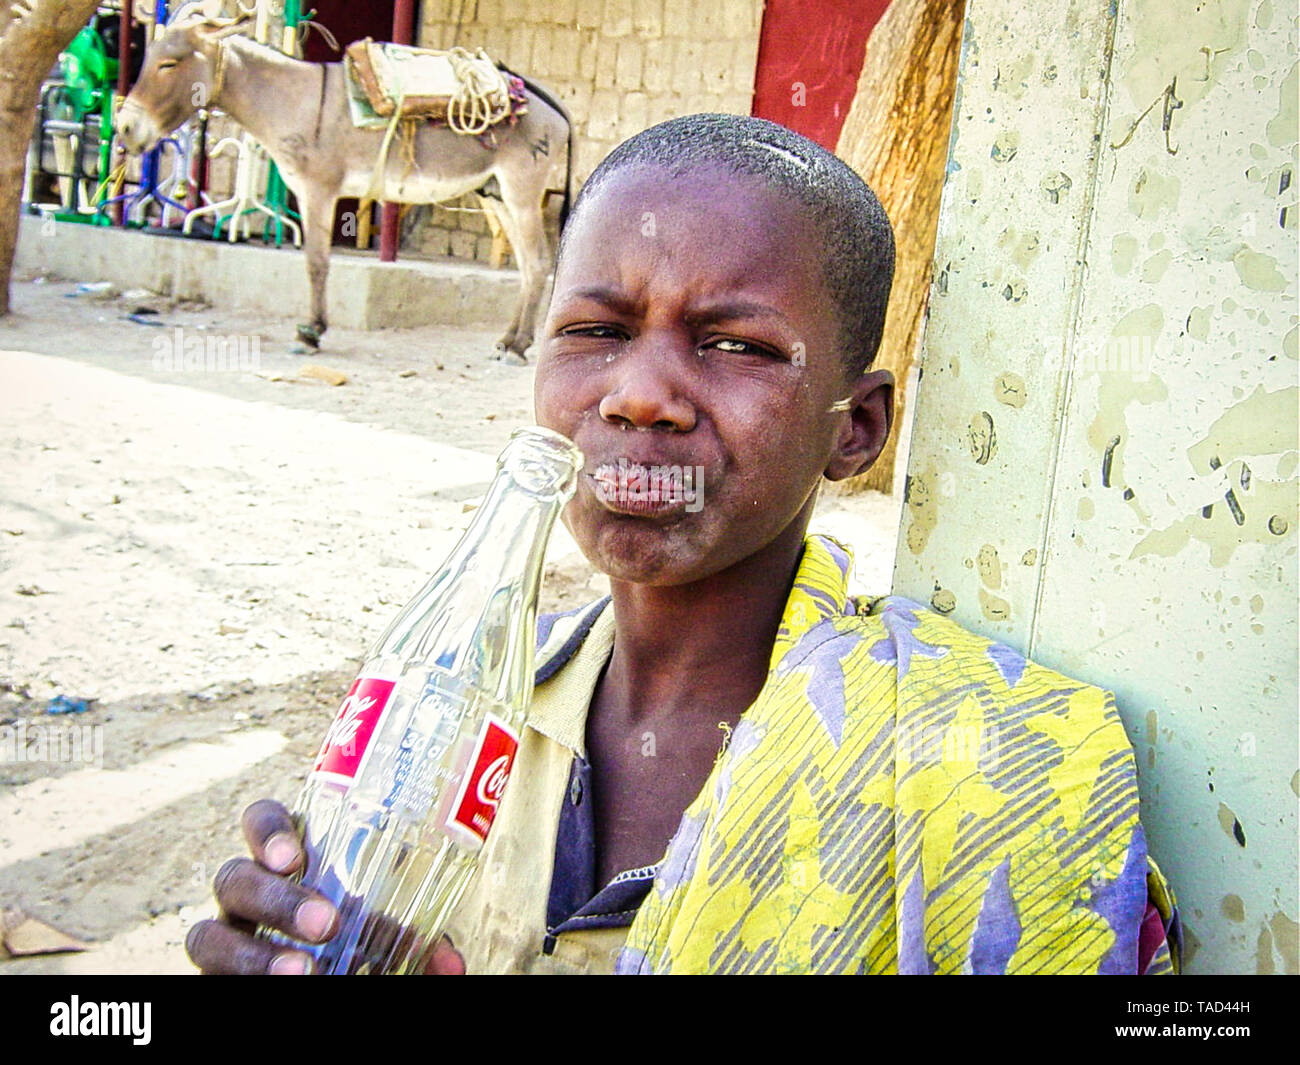 TIMBUKTU, MALI - Februar Circa, 2019. Nicht identifizierte arme Kind trinkt eine Coca-cola Flasche, gegeben durch Touristen in der Straße von Dorf in Mali Stockfoto